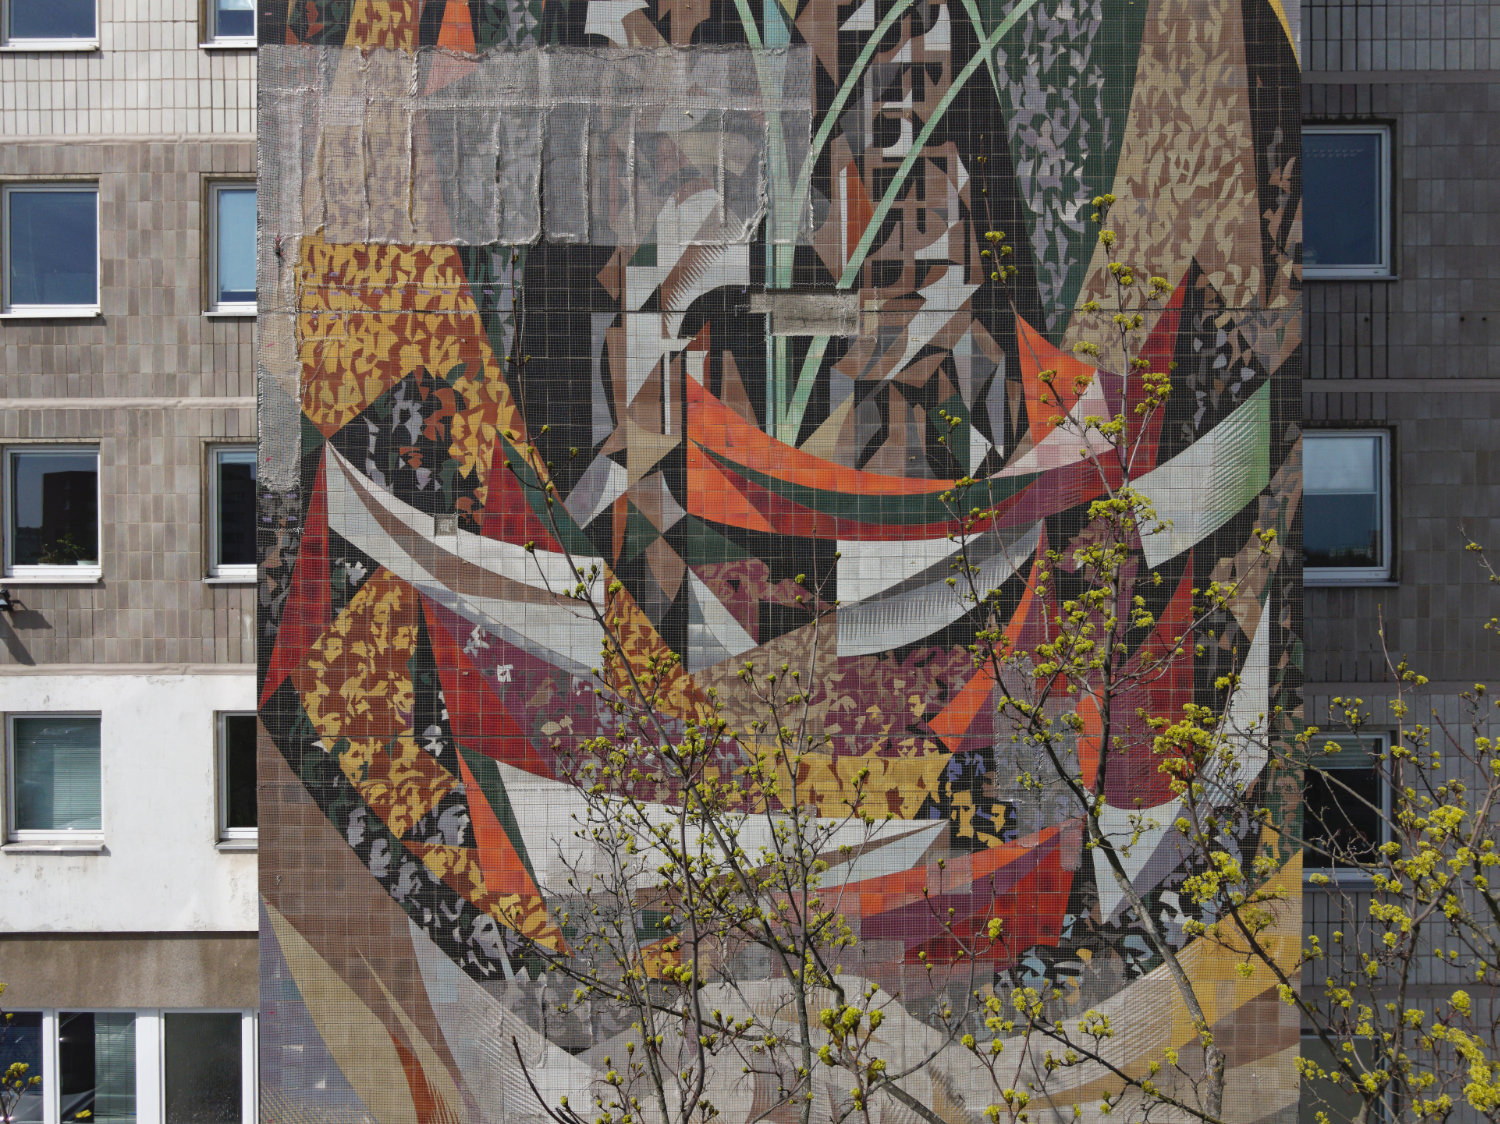 Wandmosaik von Josep Renau mit Sicherungsnetz